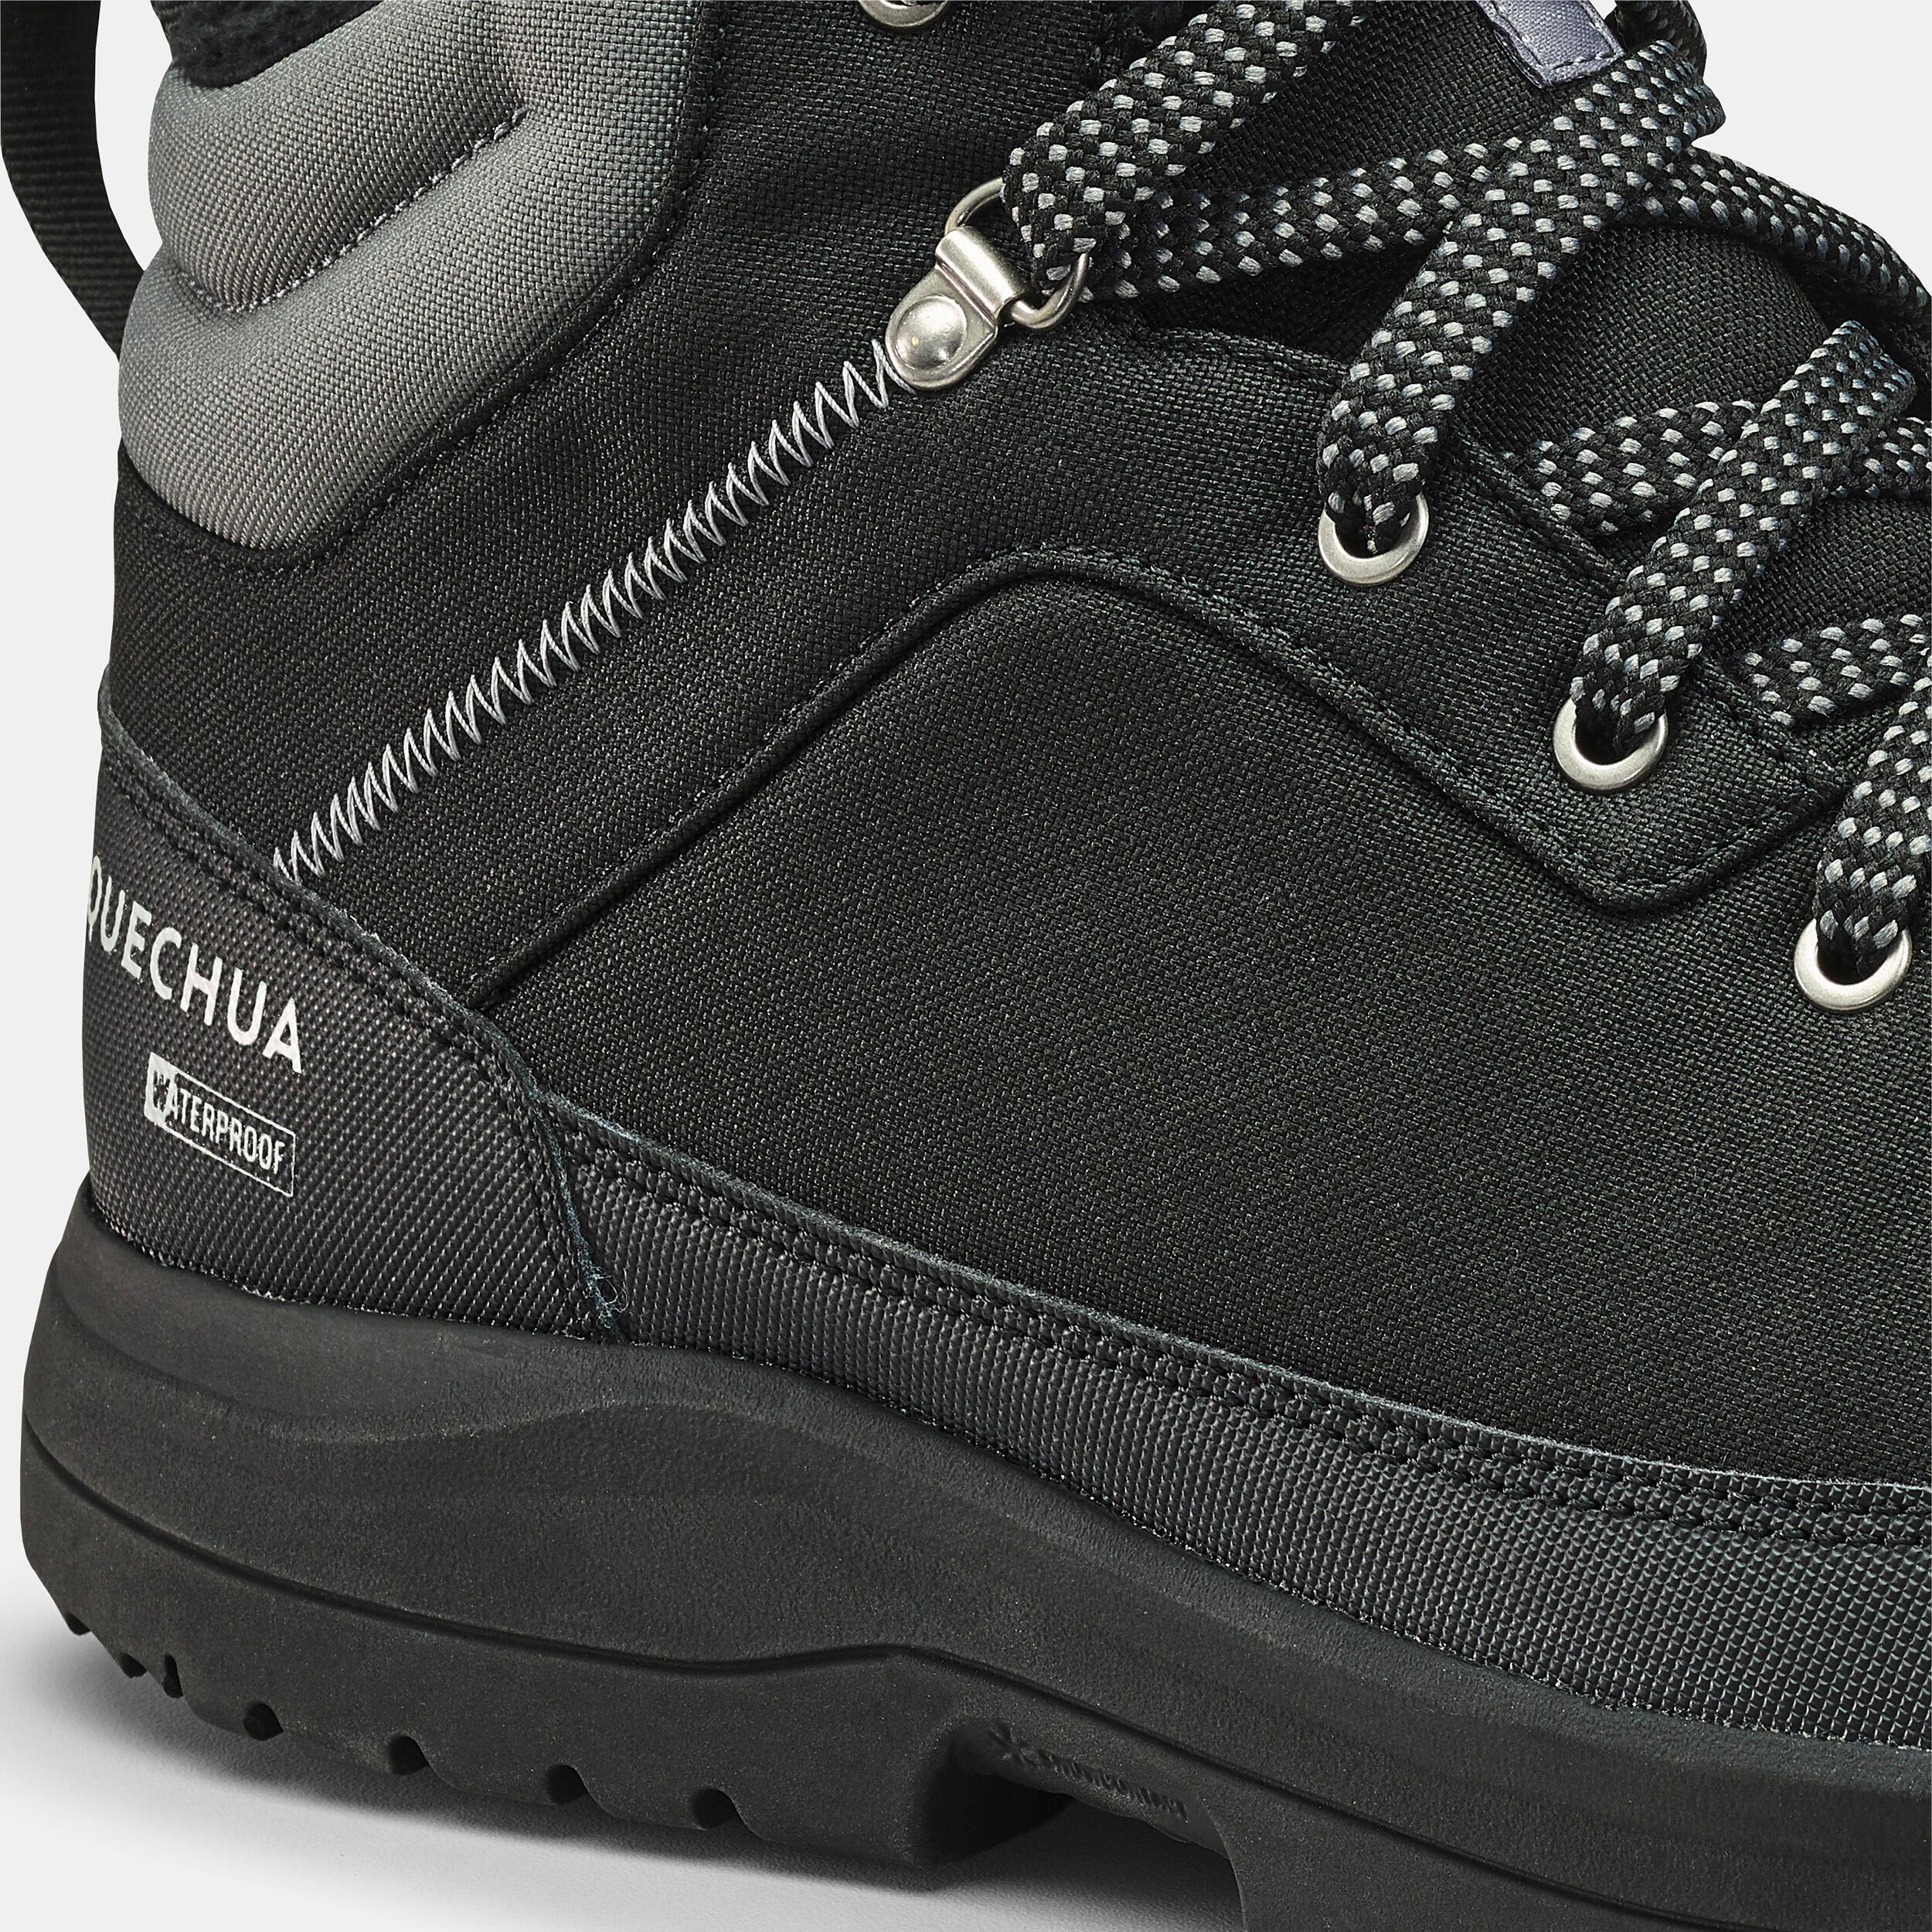 Мужские непромокаемые ботинки средней высоты для зимних походов QuechuaSH100, черный/темно-серый – заказать с доставкой из-за рубежа черезонлайн-сервис «CDEK.Shopping»